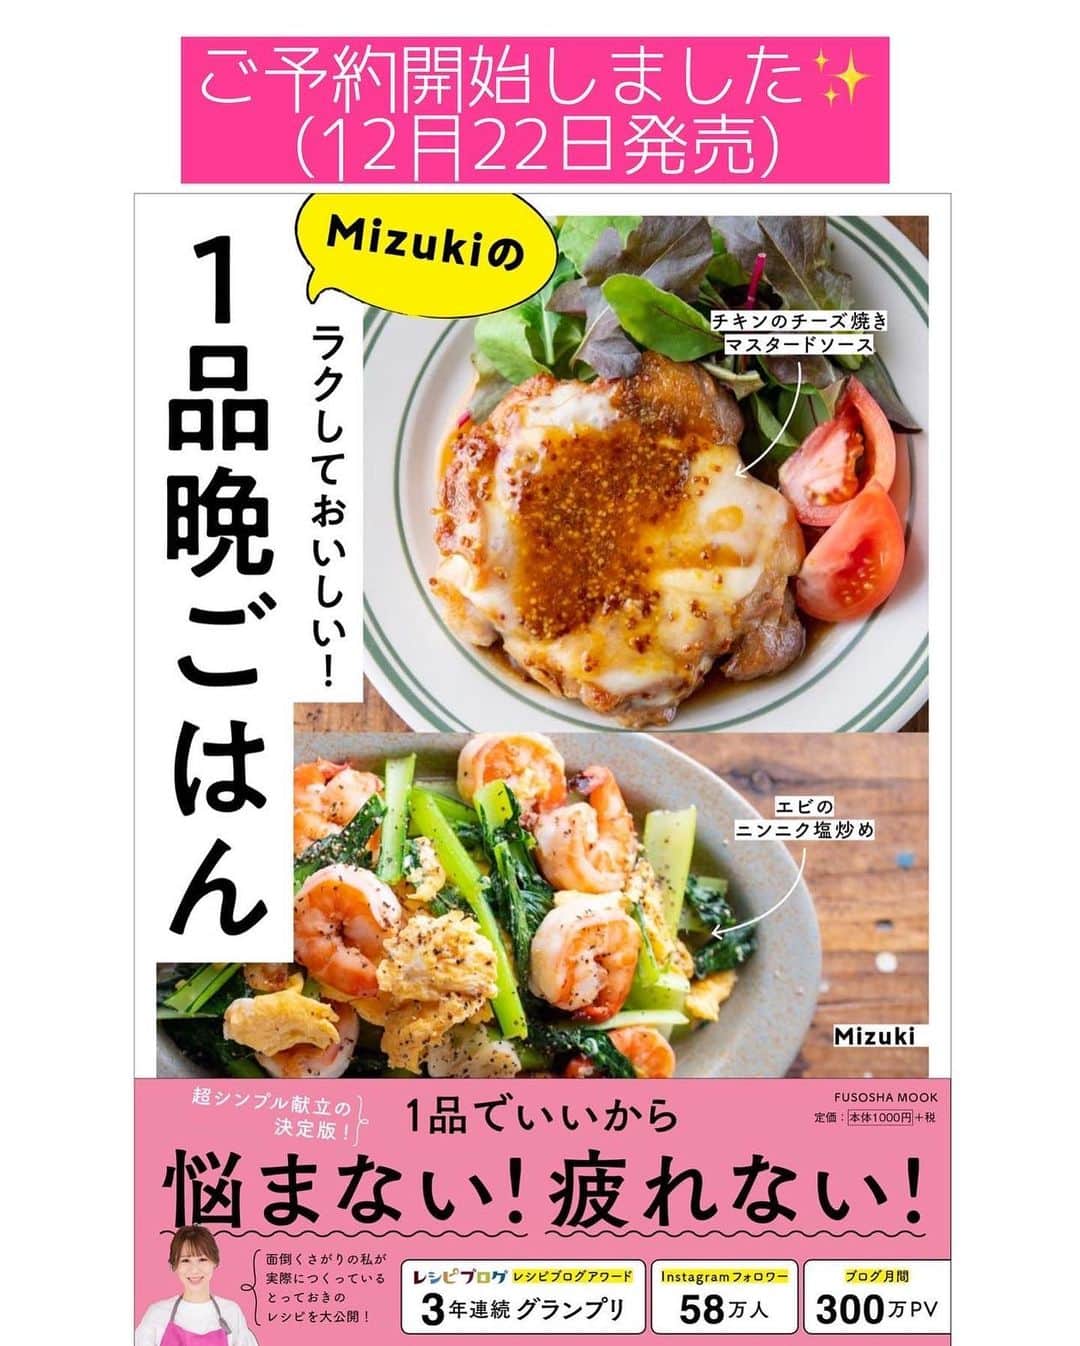 Mizuki【料理ブロガー・簡単レシピ】さんのインスタグラム写真 - (Mizuki【料理ブロガー・簡単レシピ】Instagram)「・﻿ 【#レシピ 】ーーーーーー﻿ ♡旨辛キムチ鍋♡﻿ ーーーーーーーーーーーー﻿ ﻿ ﻿ おはようございます(*^^*)﻿ ﻿ 今日ご紹介させていただくのは﻿ \\ピリっと旨辛キムチ鍋 //﻿ 市販の素を使わなくても﻿ おうちで簡単に作れますよ〜♩﻿ 旨味たっぷりのスープで﻿ お肉も野菜もたっぷり食べられます♡﻿ ﻿ 今回使用した具は一例なので﻿ お好みのものでアレンジOK！﻿ コチュジャンがなければ﻿ 味噌を増やすだけでもおいしいですよ♩﻿ (私は辛いものが苦手なので﻿ 溶き卵につけて食べたのですが﻿ これがとってもおいしかった😳❣️)﻿ ﻿ ラーメン、雑炊、うどんなど﻿ シメもお楽しみ下さいね(*^^*)﻿ ﻿ ﻿ ﻿ ＿＿＿＿＿＿＿＿＿＿＿＿＿＿＿＿＿＿＿＿﻿ 【3人分くらい】﻿ 豚バラ薄切り肉...200g﻿ ニラ...1/2束﻿ 長ねぎ...1本﻿ 白菜...200g﻿ しいたけ...4枚﻿ 豆腐...1/2丁﻿ キムチ...200g ﻿ ごま油...小2﻿ ●水...600ml﻿ ●味噌...大2﻿ ●コチュジャン...大1﻿ ●鶏がらスープ・醤油...各小2﻿ ﻿ 1.豚肉とニラは4cm長さに切る。長ねぎは斜め1cm幅に切る。白菜はざく切りにする。しいたけと豆腐は食べやすい大きさに切る。﻿ 2.鍋にごま油を中火で熱し、豚肉とキムチを炒める。豚肉に火が通ったら●を加えて混ぜ、煮立ったらニラ以外の残り材料を加えて5〜6分煮る。﻿ 3.仕上げにニラを加えてさっと煮る。﻿ ￣￣￣￣￣￣￣￣￣￣￣￣￣￣￣￣￣￣￣￣﻿ ﻿ ﻿ ﻿ 《ポイント》﻿ ♦︎豆腐は絹、木綿、焼き豆腐、どれでもOK！キャベツ、えのき、もやし、小松菜、油揚げ、厚揚げ、市販の餃子を入れても合います♩﻿ ♦︎24cmのお鍋を使用しています♩﻿ ﻿ ﻿ ﻿ ﻿ ﻿ ﻿ ﻿ 昨日は新刊に沢山のご予約をいただき﻿ 誠にありがとうございました😭💕﻿ 予想を上回る反響をいただき﻿ チーム一同喜んでおります（ ; ; ）✨﻿ 私も久しぶりに安心して眠れました🥺﻿ ﻿ ↓ ↓ ↓﻿ ﻿ 📕新刊予約開始しました📕﻿ 【ラクしておいしい！#1品晩ごはん 】﻿ ￣￣￣￣￣￣￣￣￣￣￣￣￣￣￣￣￣﻿ 私たちだってヘトヘトな日がある•••﻿ 毎日何品も作っていられない•••﻿ もうごはんに悩みたくない😢﻿ そう思うことってありませんか？﻿ そんな時、1品ごはんはいかがでしょう？﻿ というご提案です✨﻿ ﻿ ﻿ 【1品ごはん】は﻿ 副菜いらずで全てがシンプル！﻿ ￣￣￣￣￣￣￣￣￣￣￣￣￣￣￣￣￣￣﻿ 一品つくるだけでいいから﻿ 献立を考えなくてよし！﻿ ￣￣￣￣￣￣￣￣￣￣￣￣￣￣￣￣￣￣﻿ 悩まない、疲れない、﻿ 気力や時間がなくてもなんとかなる！﻿ ￣￣￣￣￣￣￣￣￣￣￣￣￣￣￣￣￣￣﻿ そんな頼りになる﻿ 便利なお助けごはんです☺️💕﻿ (ハイライトに🔗貼っています✨)﻿ ￣￣￣￣￣￣￣￣￣￣￣￣￣￣￣￣￣﻿ ﻿ ﻿ ﻿ ﻿ ﻿ ⭐️発売中⭐️﻿ ＿＿＿＿＿＿＿＿＿＿＿＿＿＿＿＿＿＿﻿ しんどくない献立、考えました♩﻿ \15分でいただきます/﻿ 📕#Mizukiの2品献立 📕﻿ ﻿ 和食をもっとカジュアルに♩﻿ \毎日のごはんがラクになる/﻿ 📘#Mizukiの今どき和食 📘﻿ ﻿ ホケミレシピの決定版♩﻿ \はじめてでも失敗しない/﻿ 📙#ホットケーキミックスのお菓子 📙﻿ ￣￣￣￣￣￣￣￣￣￣￣￣￣￣￣￣￣￣﻿ ﻿ ﻿ ﻿ ＿＿＿＿＿＿＿＿＿＿＿＿＿＿＿＿＿＿﻿ レシピを作って下さった際や﻿ レシピ本についてのご投稿には﻿ タグ付け( @mizuki_31cafe )して﻿ お知らせいただけると嬉しいです😊💕﻿ ￣￣￣￣￣￣￣￣￣￣￣￣￣￣￣￣￣￣﻿ ﻿ ﻿ ﻿ ﻿ #キムチ鍋#キムチ#鍋#Mizuki#簡単レシピ#時短レシピ#節約レシピ#料理#フーディーテーブル#マカロニメイト#おうちごはん#デリスタグラマー#料理好きな人と繋がりたい#食べ物#料理記録#おうちごはんlover#写真好きな人と繋がりたい#foodpic#cooking#recipe#lin_stagrammer#foodporn#yummy#f52grams#キムチ鍋m」12月10日 7時31分 - mizuki_31cafe